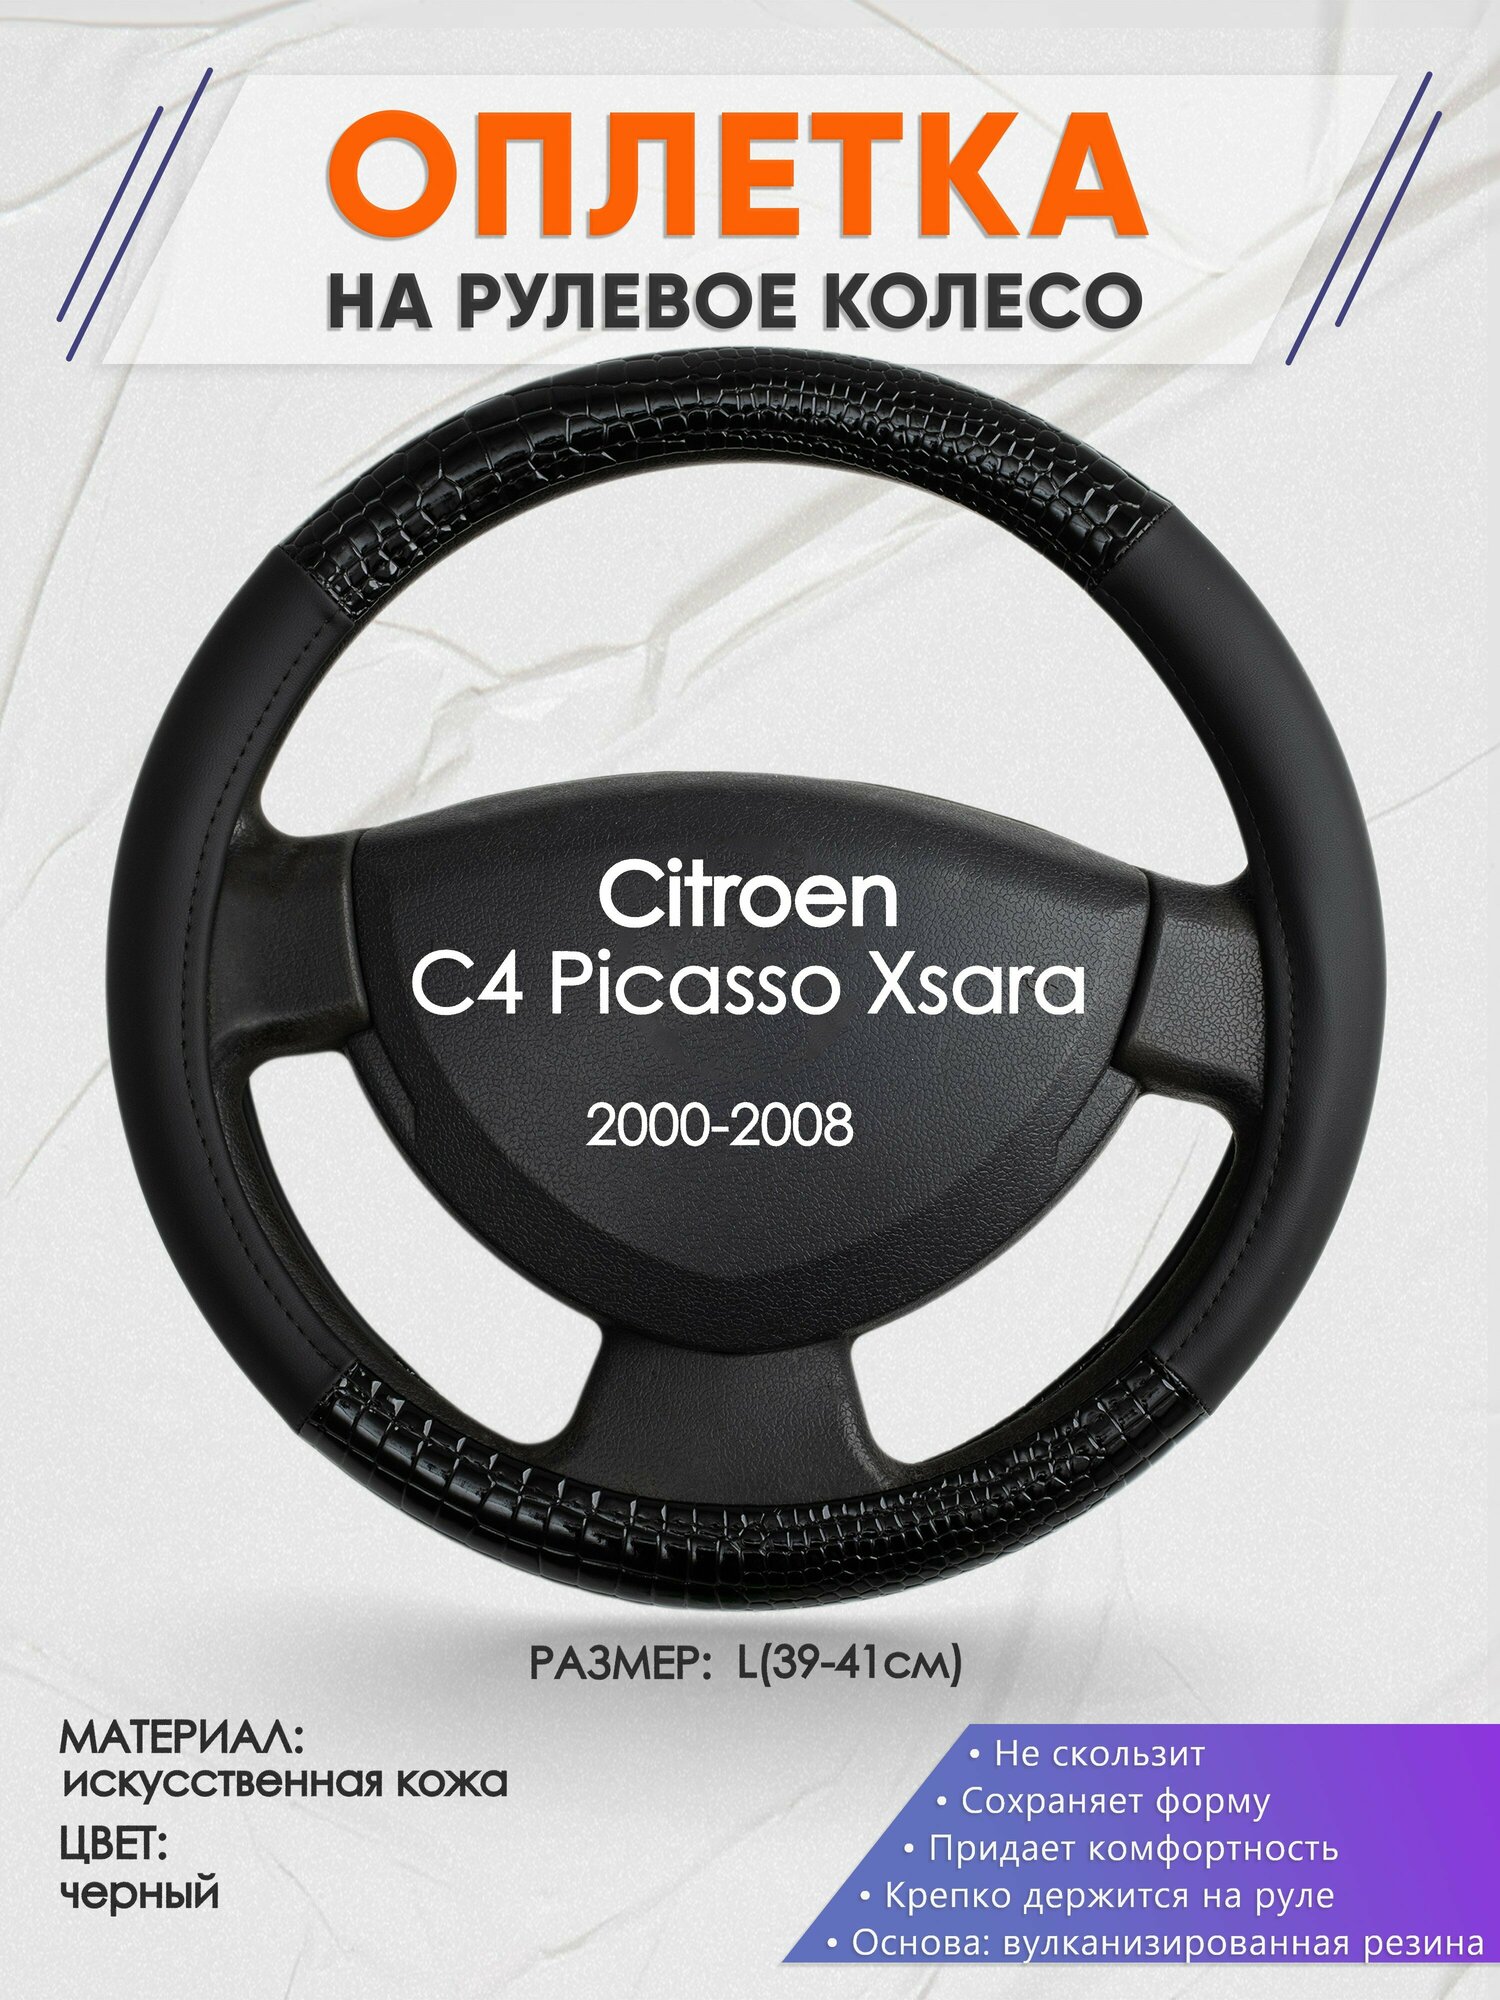 Оплетка на руль для Citroen C4 Picasso Xsara(Ситроен С4 Пикассо Ксара) 2000-2008, L(39-41см), Искусственная кожа 83